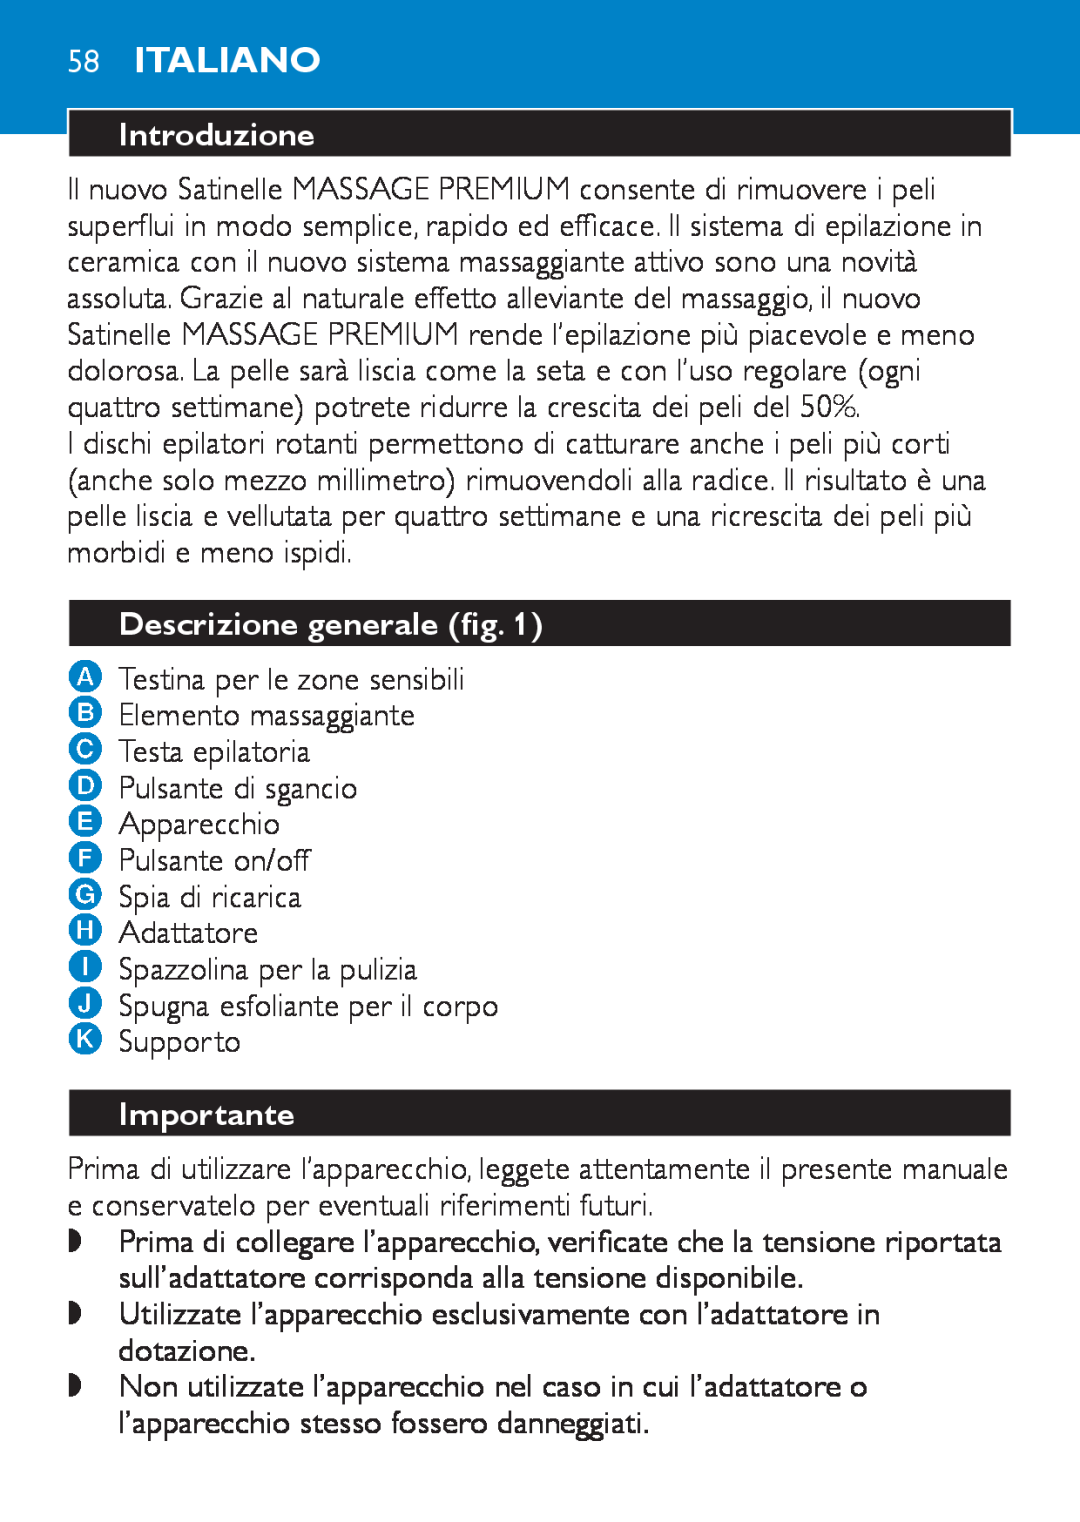 Philips HP6490 manual 58Italiano, Introduzione, Descrizione generale fig, Importante 